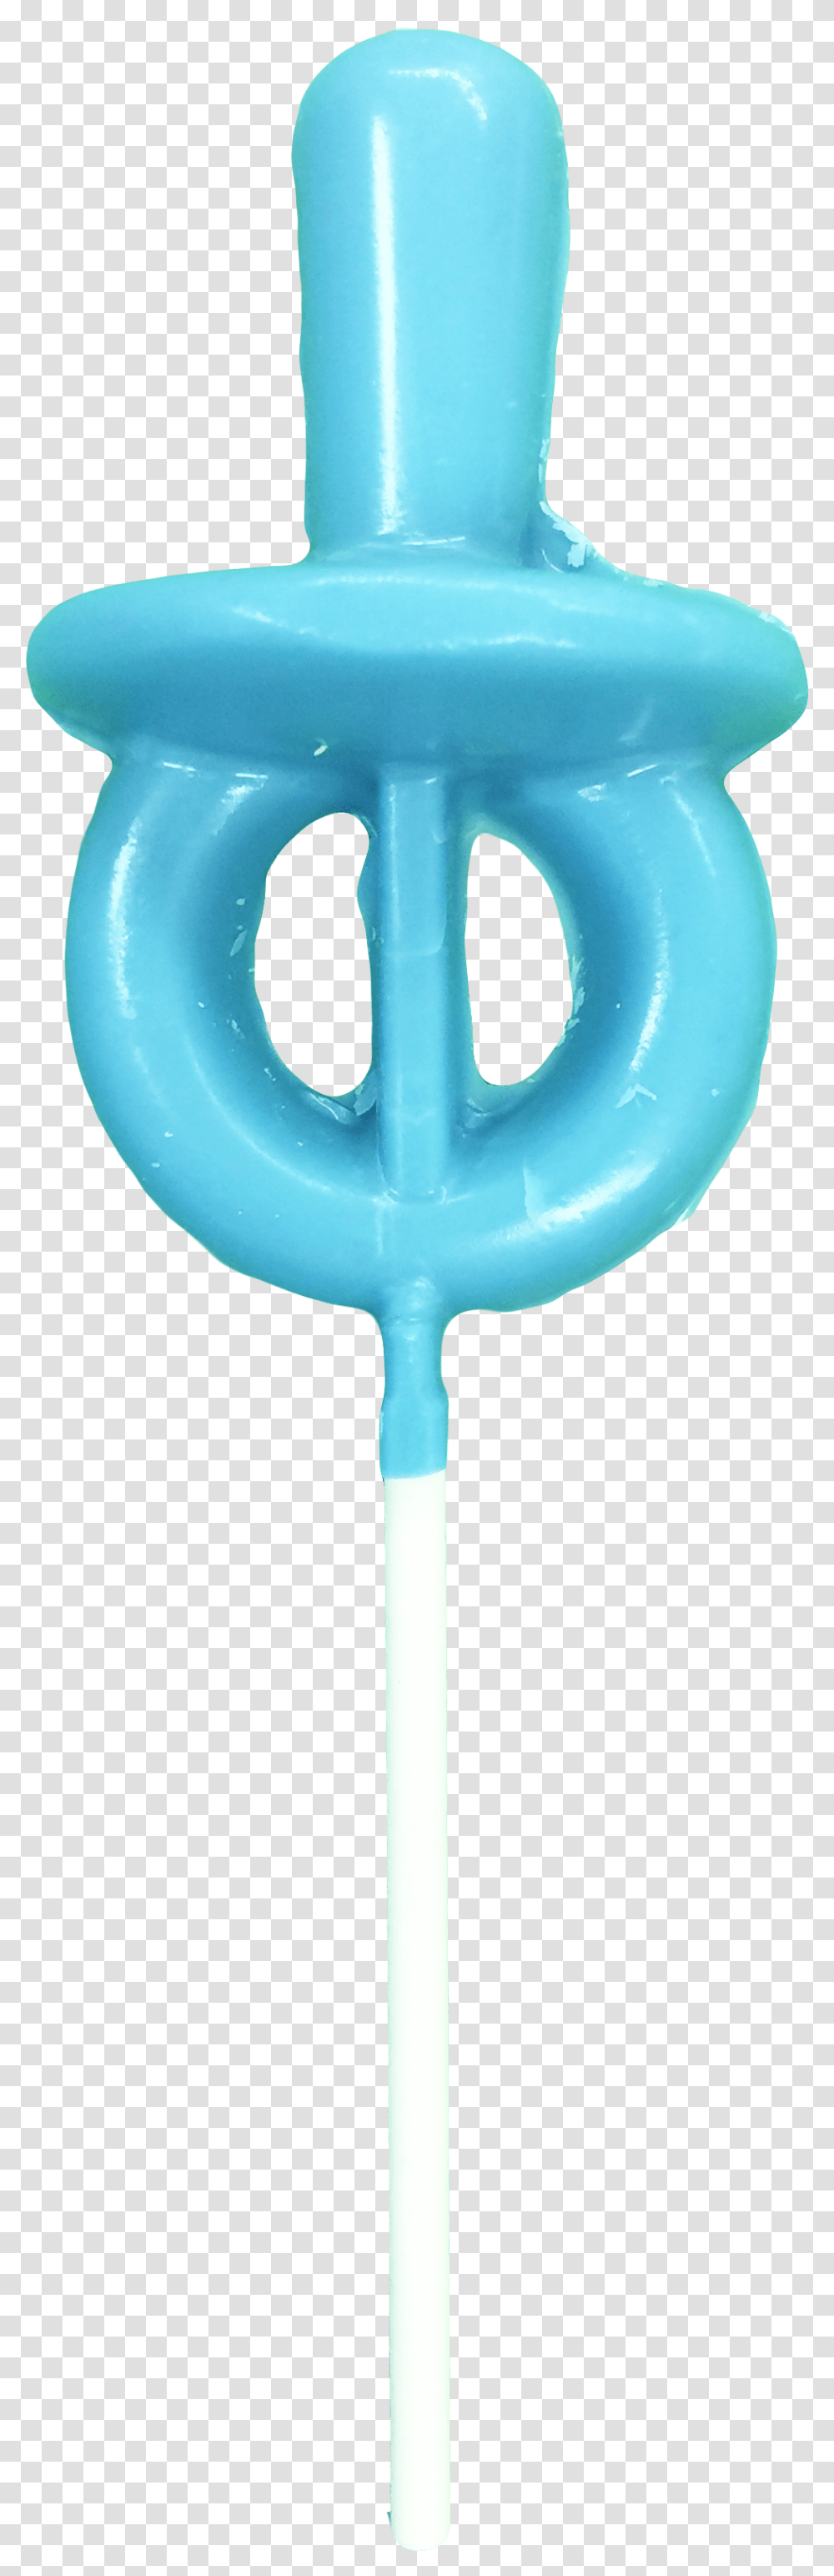 Pacifier Lollipop, Emblem, Weapon, Weaponry Transparent Png